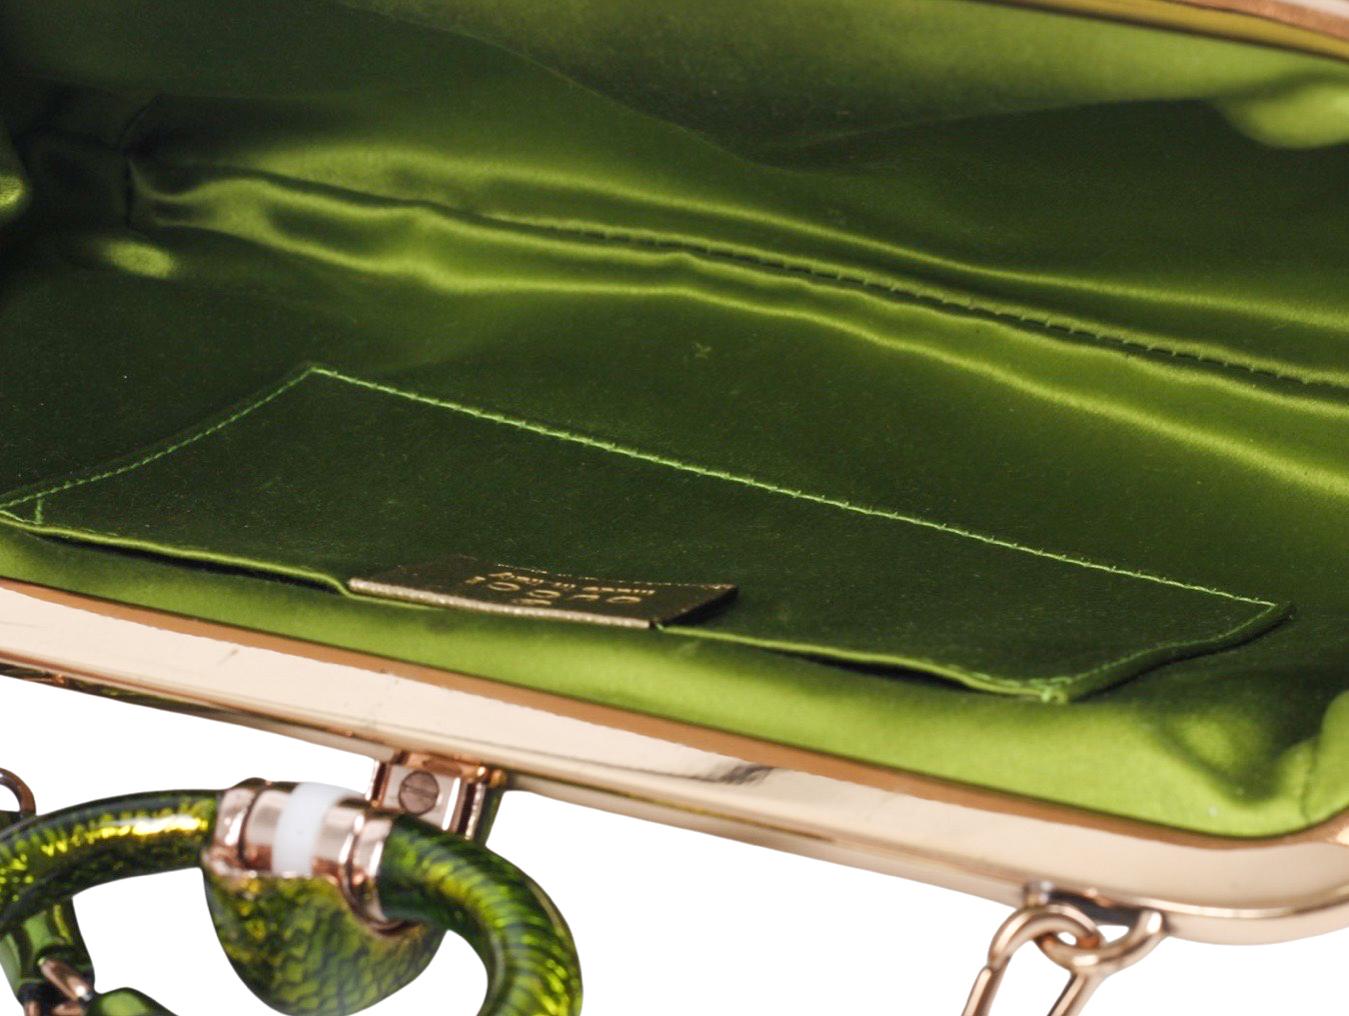 designer bag with snake clasp